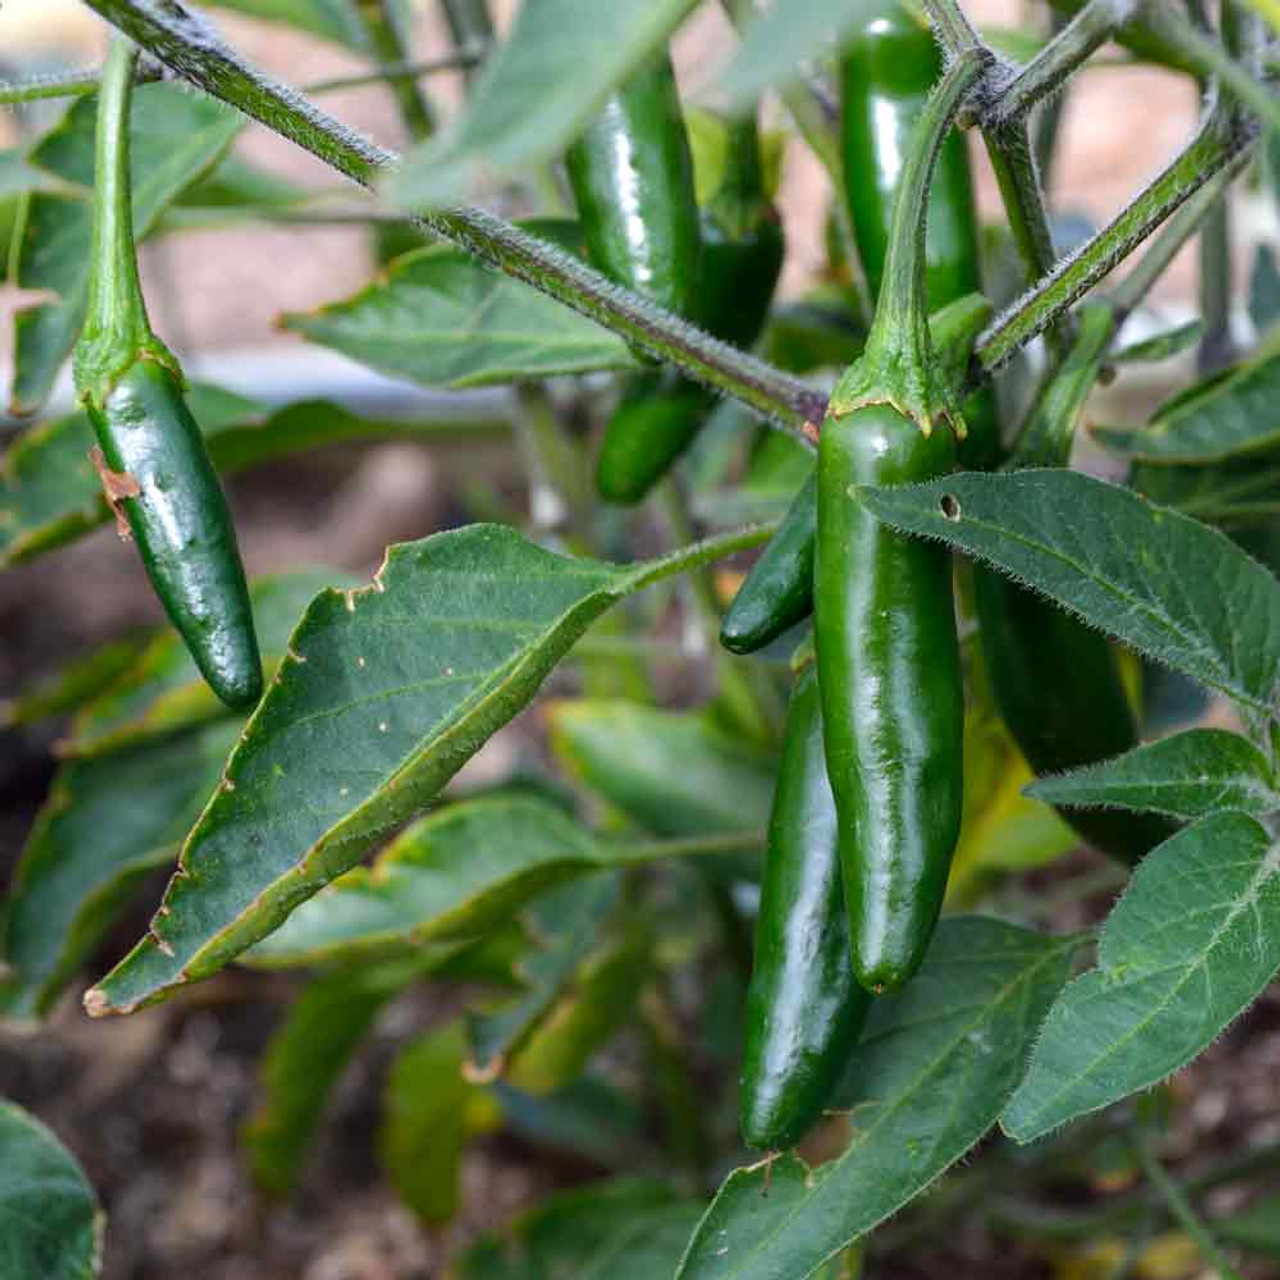 Serrano Tampiqueño Pepper Seeds